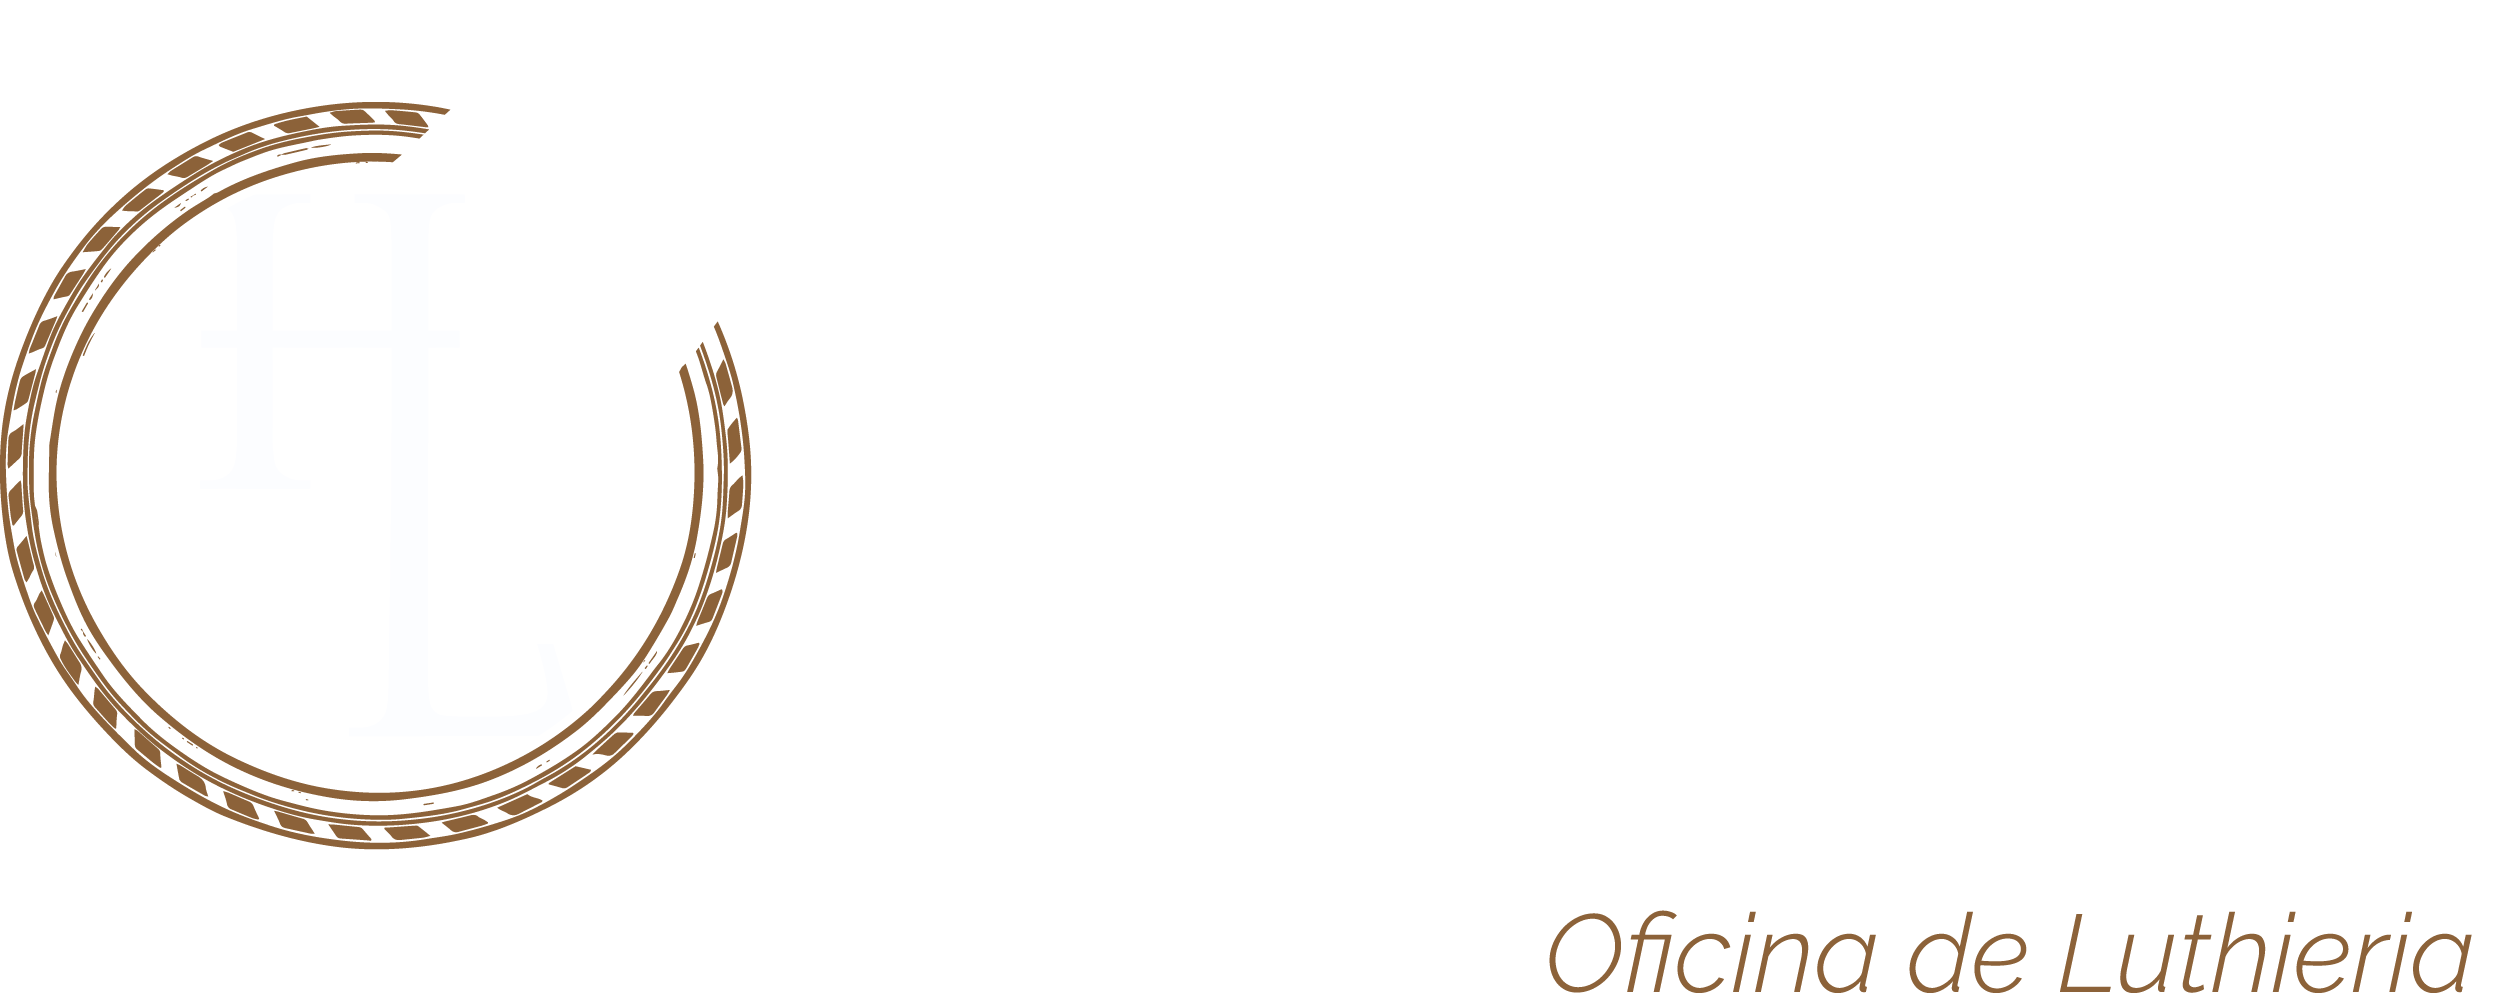 Henrique Luthier